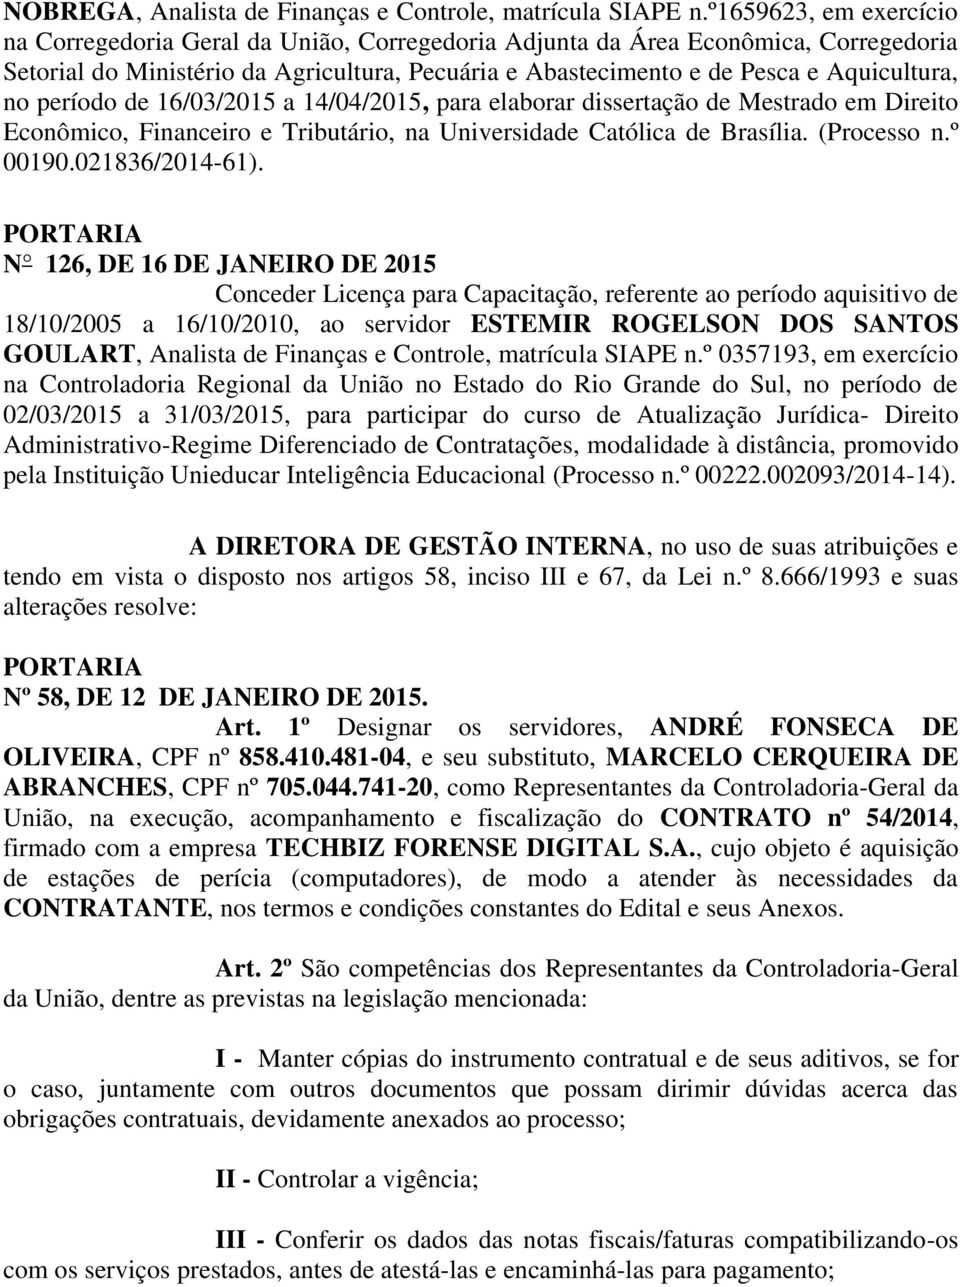 no período de 16/03/2015 a 14/04/2015, para elaborar dissertação de Mestrado em Direito Econômico, Financeiro e Tributário, na Universidade Católica de Brasília. (Processo n.º 00190.021836/2014-61).